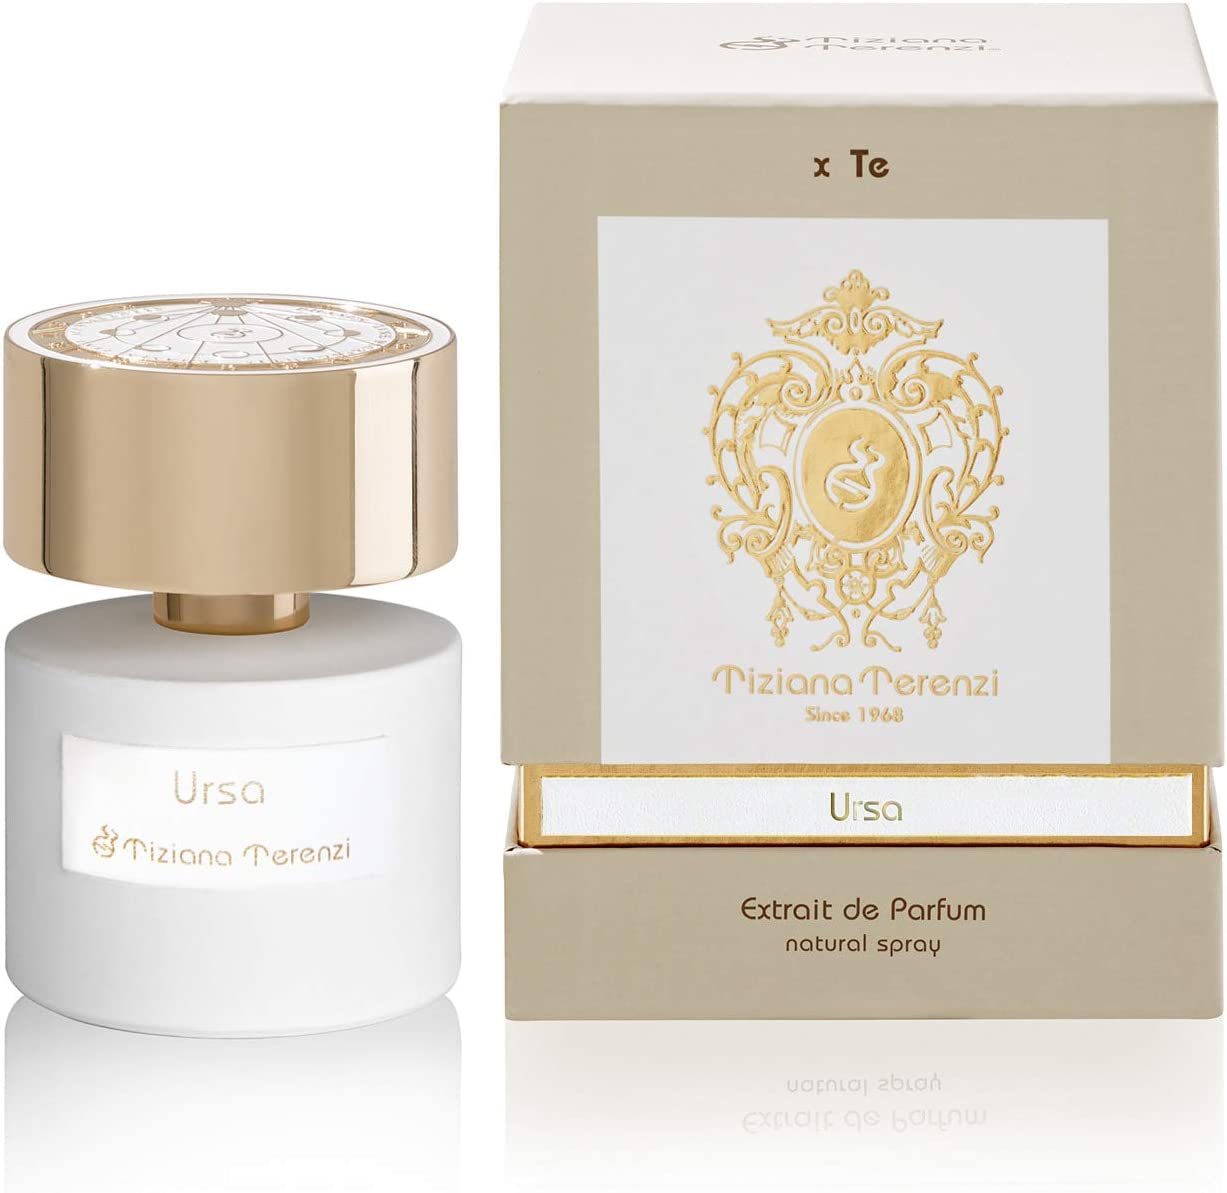 Ursa Unisex Perfume by Tiziana Terenzi - Eau de Parfum 100ml